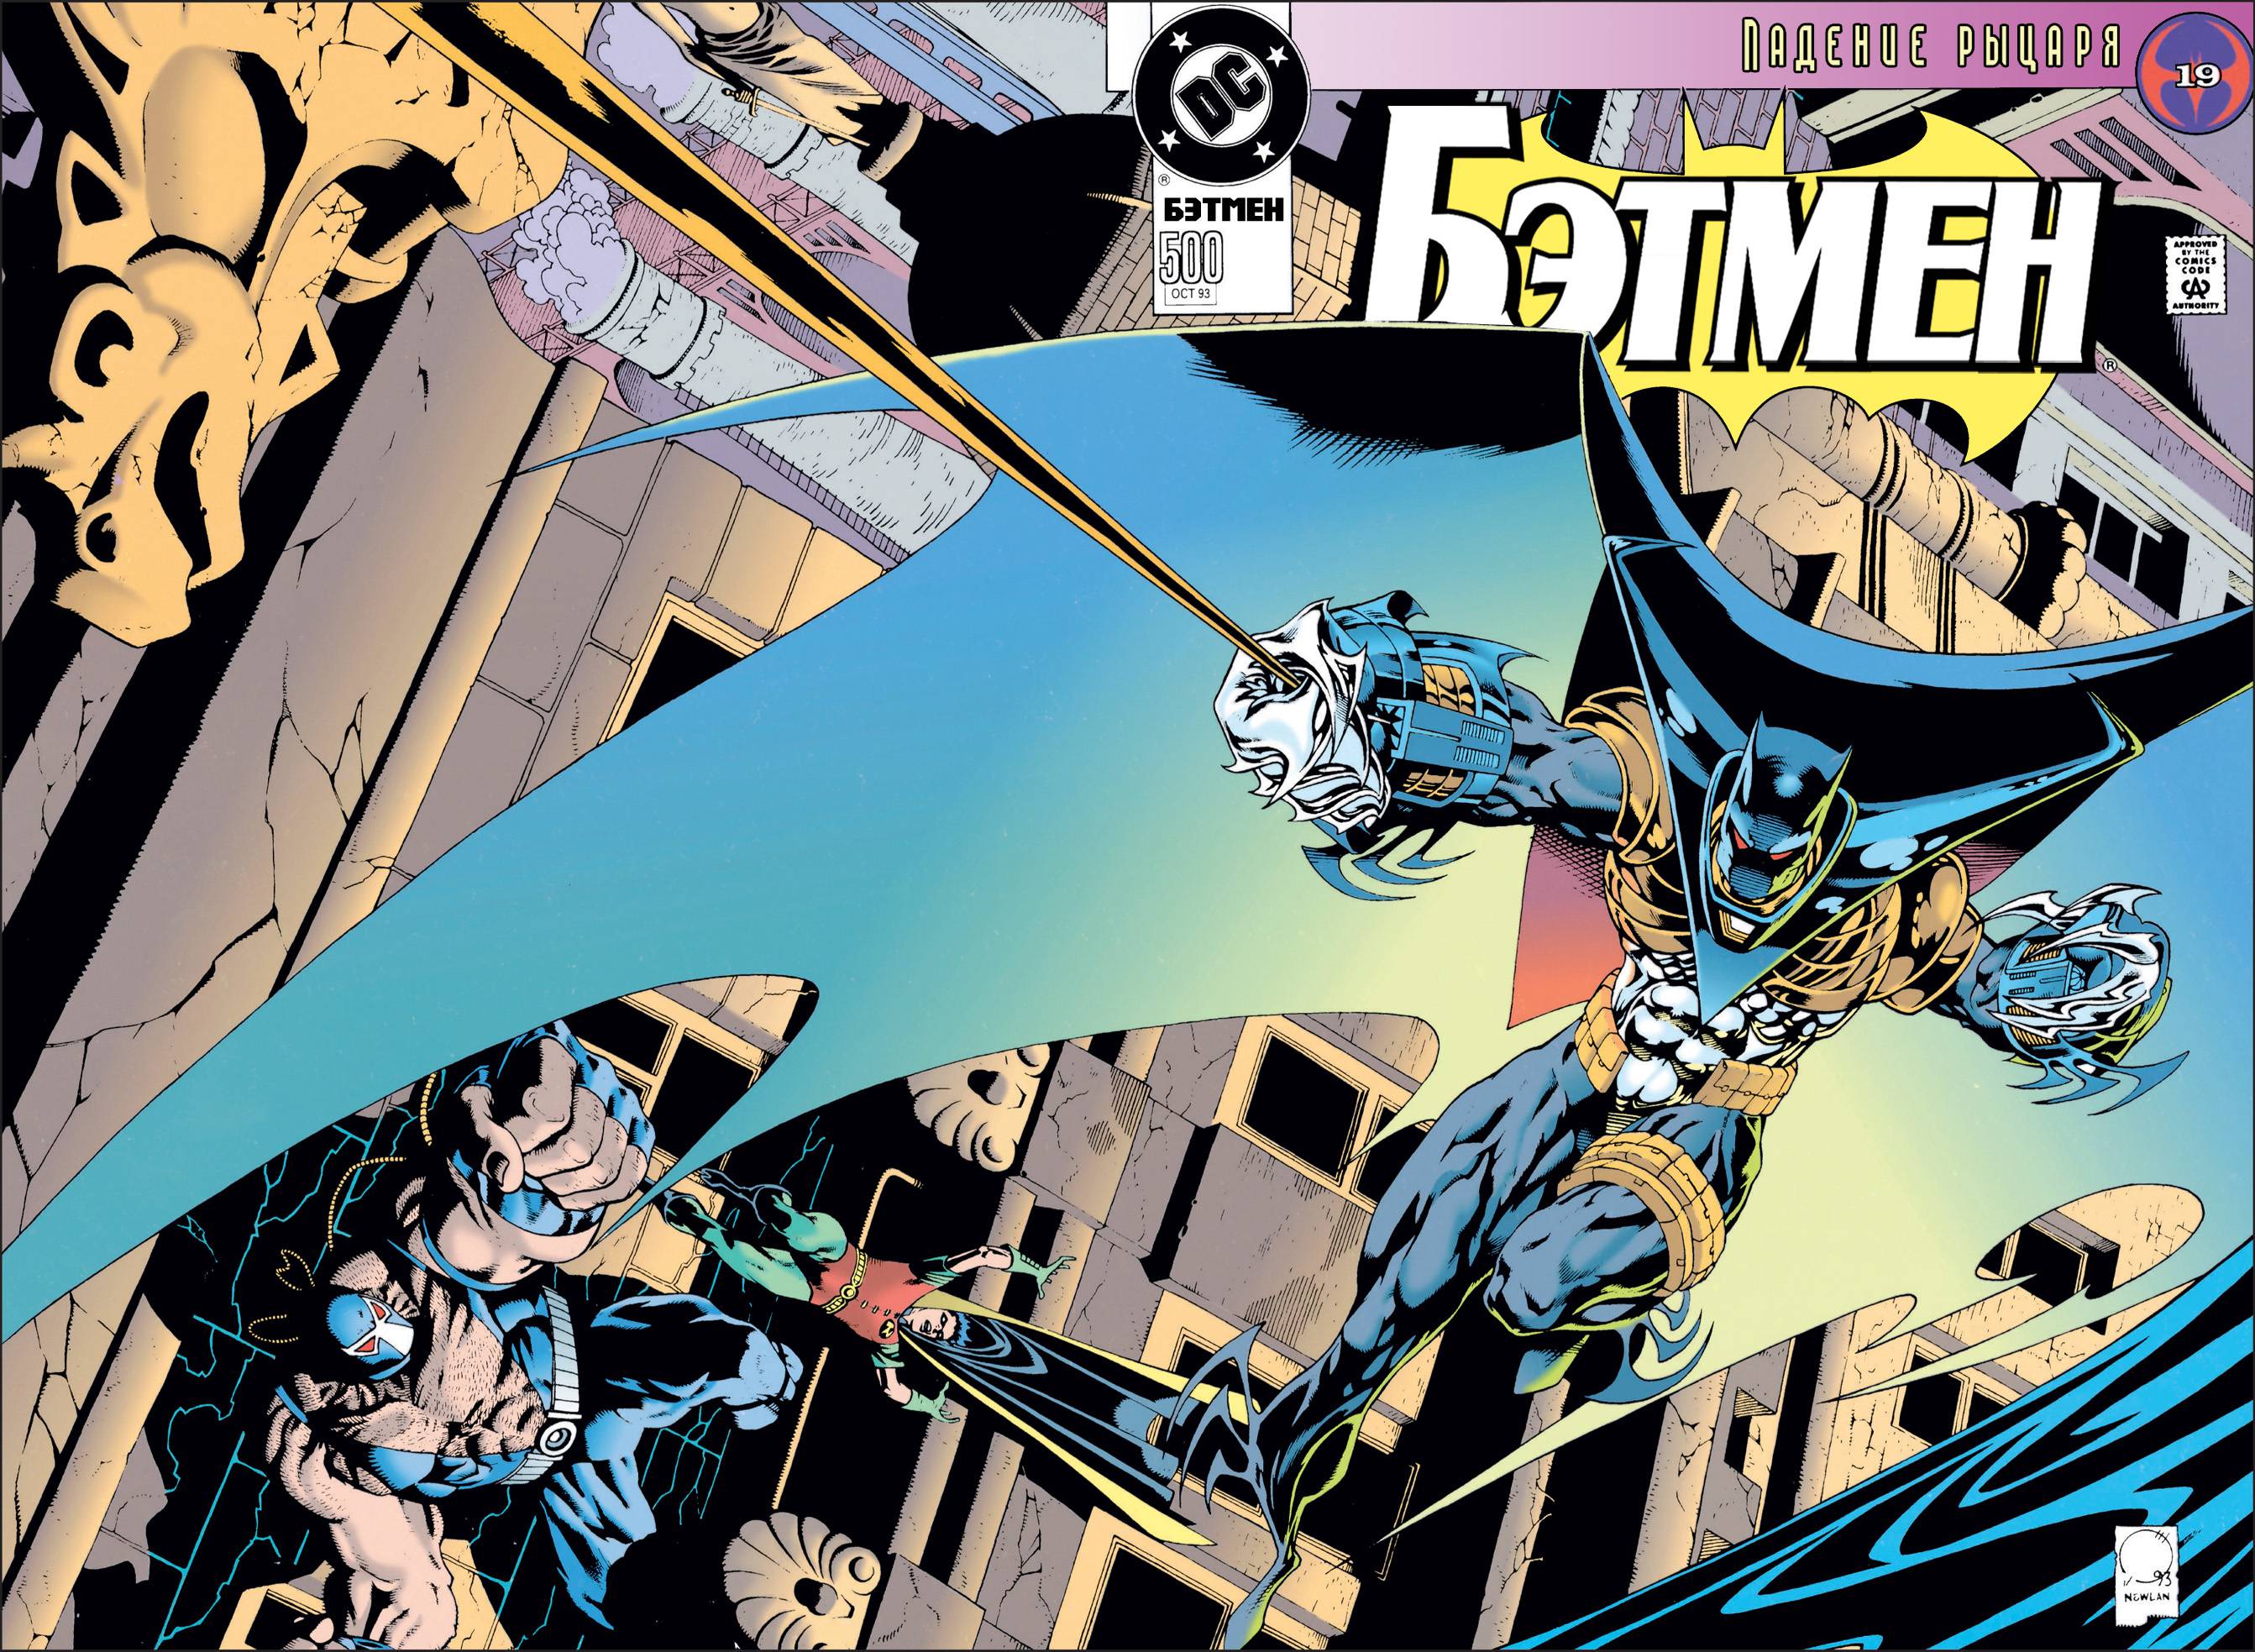 Темное падение 63 глава. Batman #500. Бэтмен 10 часов. Бейн против Азраила. Бэтмен 500 на 500.